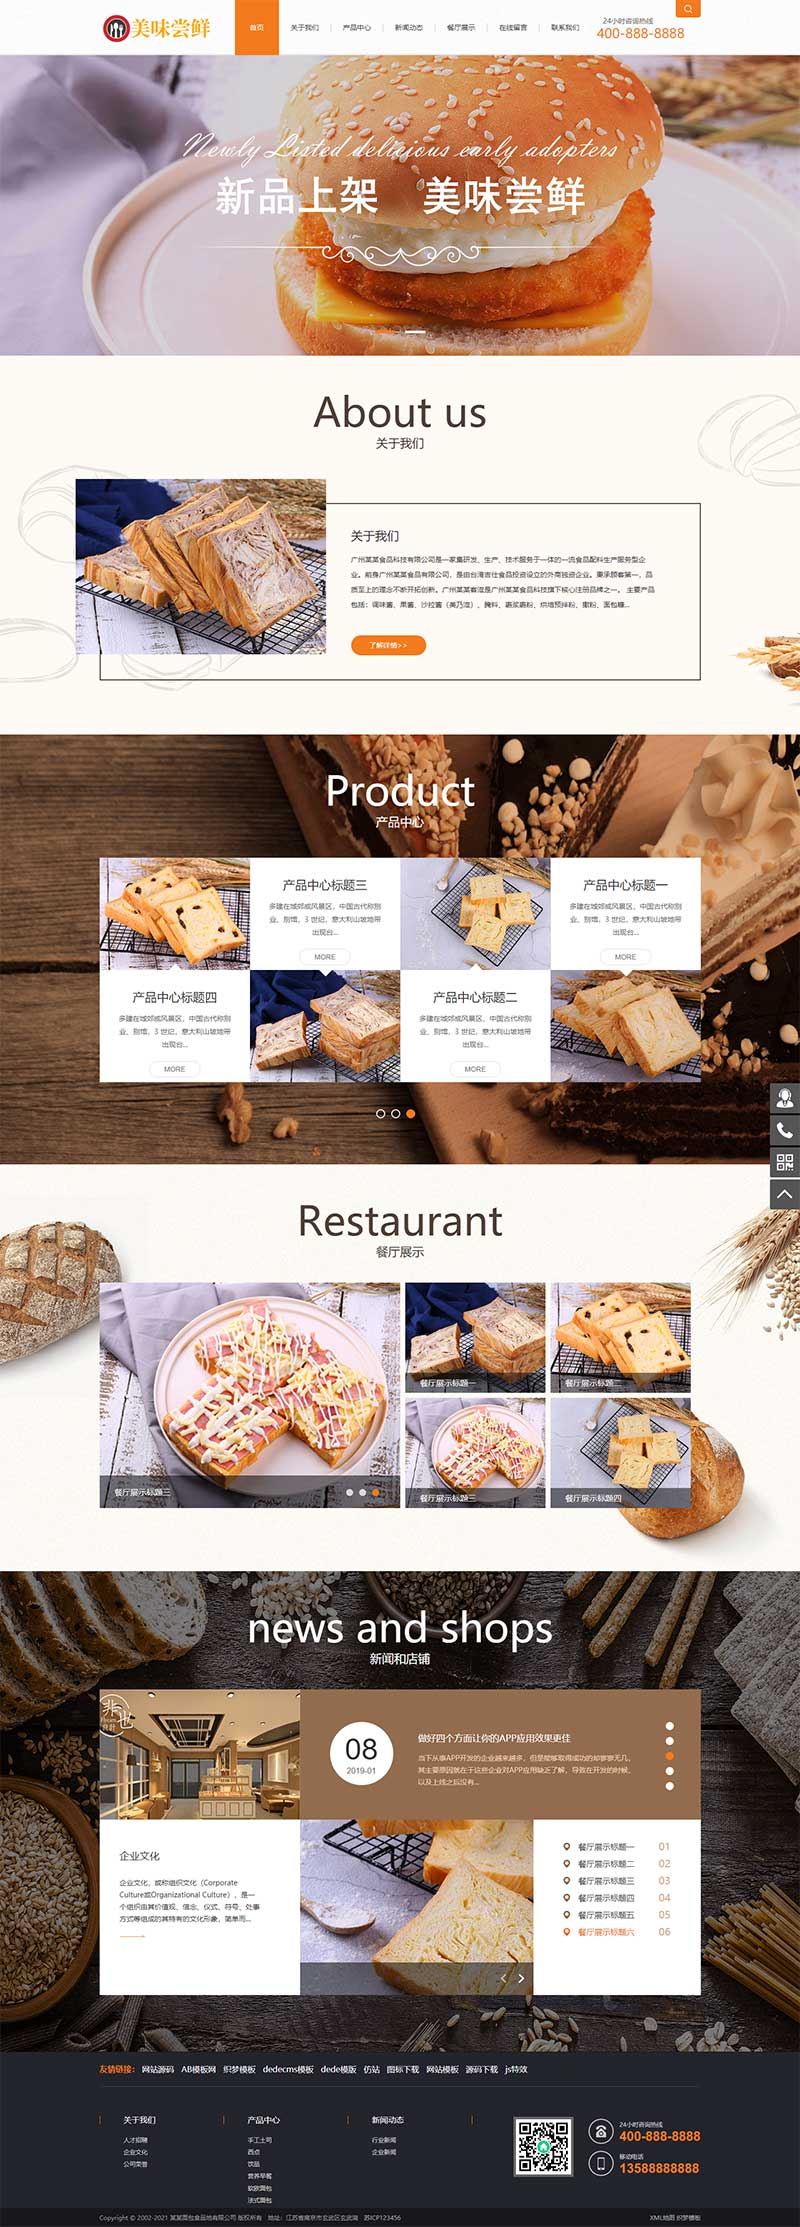 蛋糕面包网站 食品糕点类网站模板下载 织梦模板 带手机版数据同步